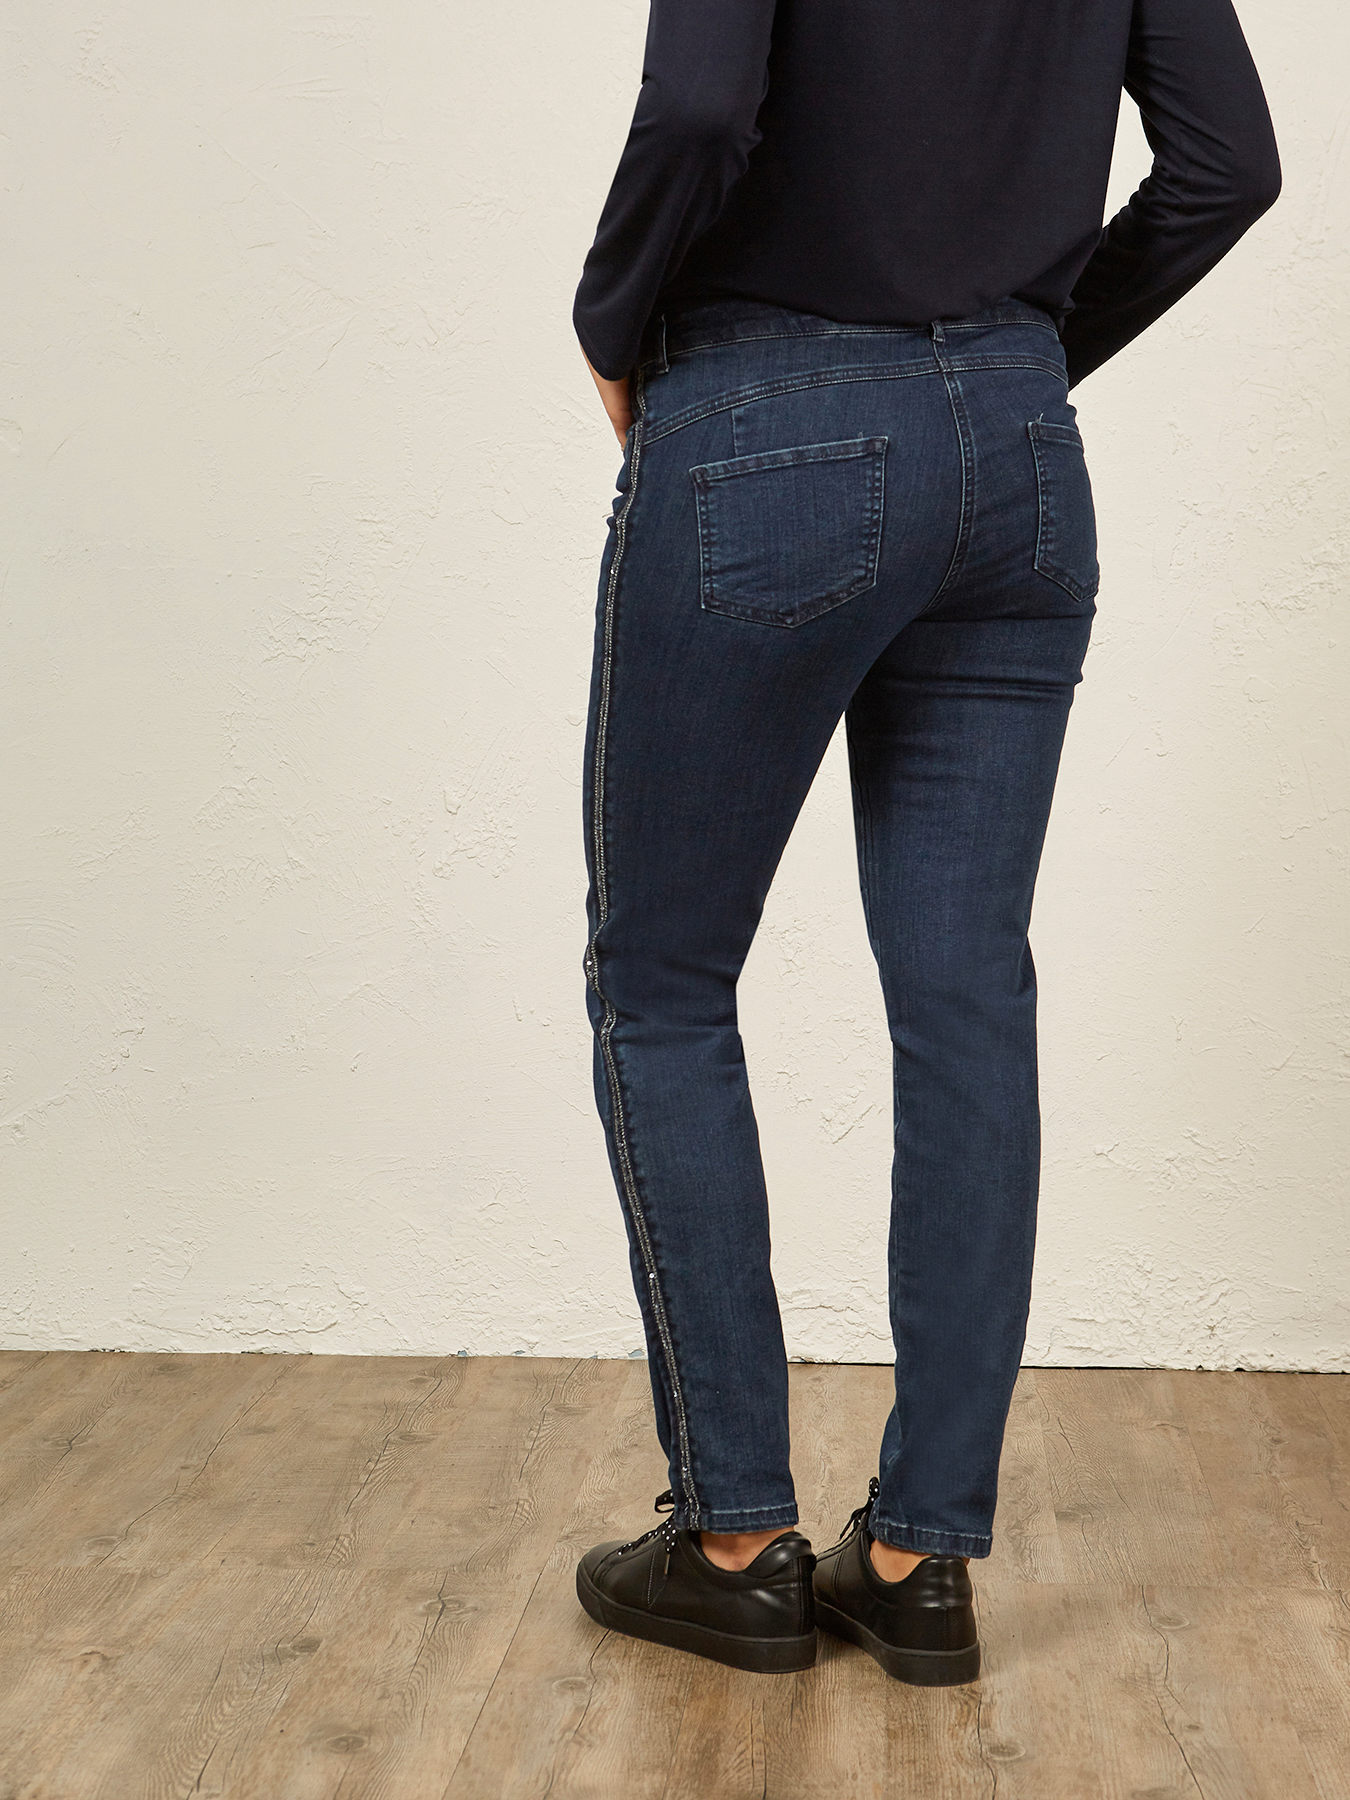 Pantalon Elastico con Pedreria de Elena Miro - Calma